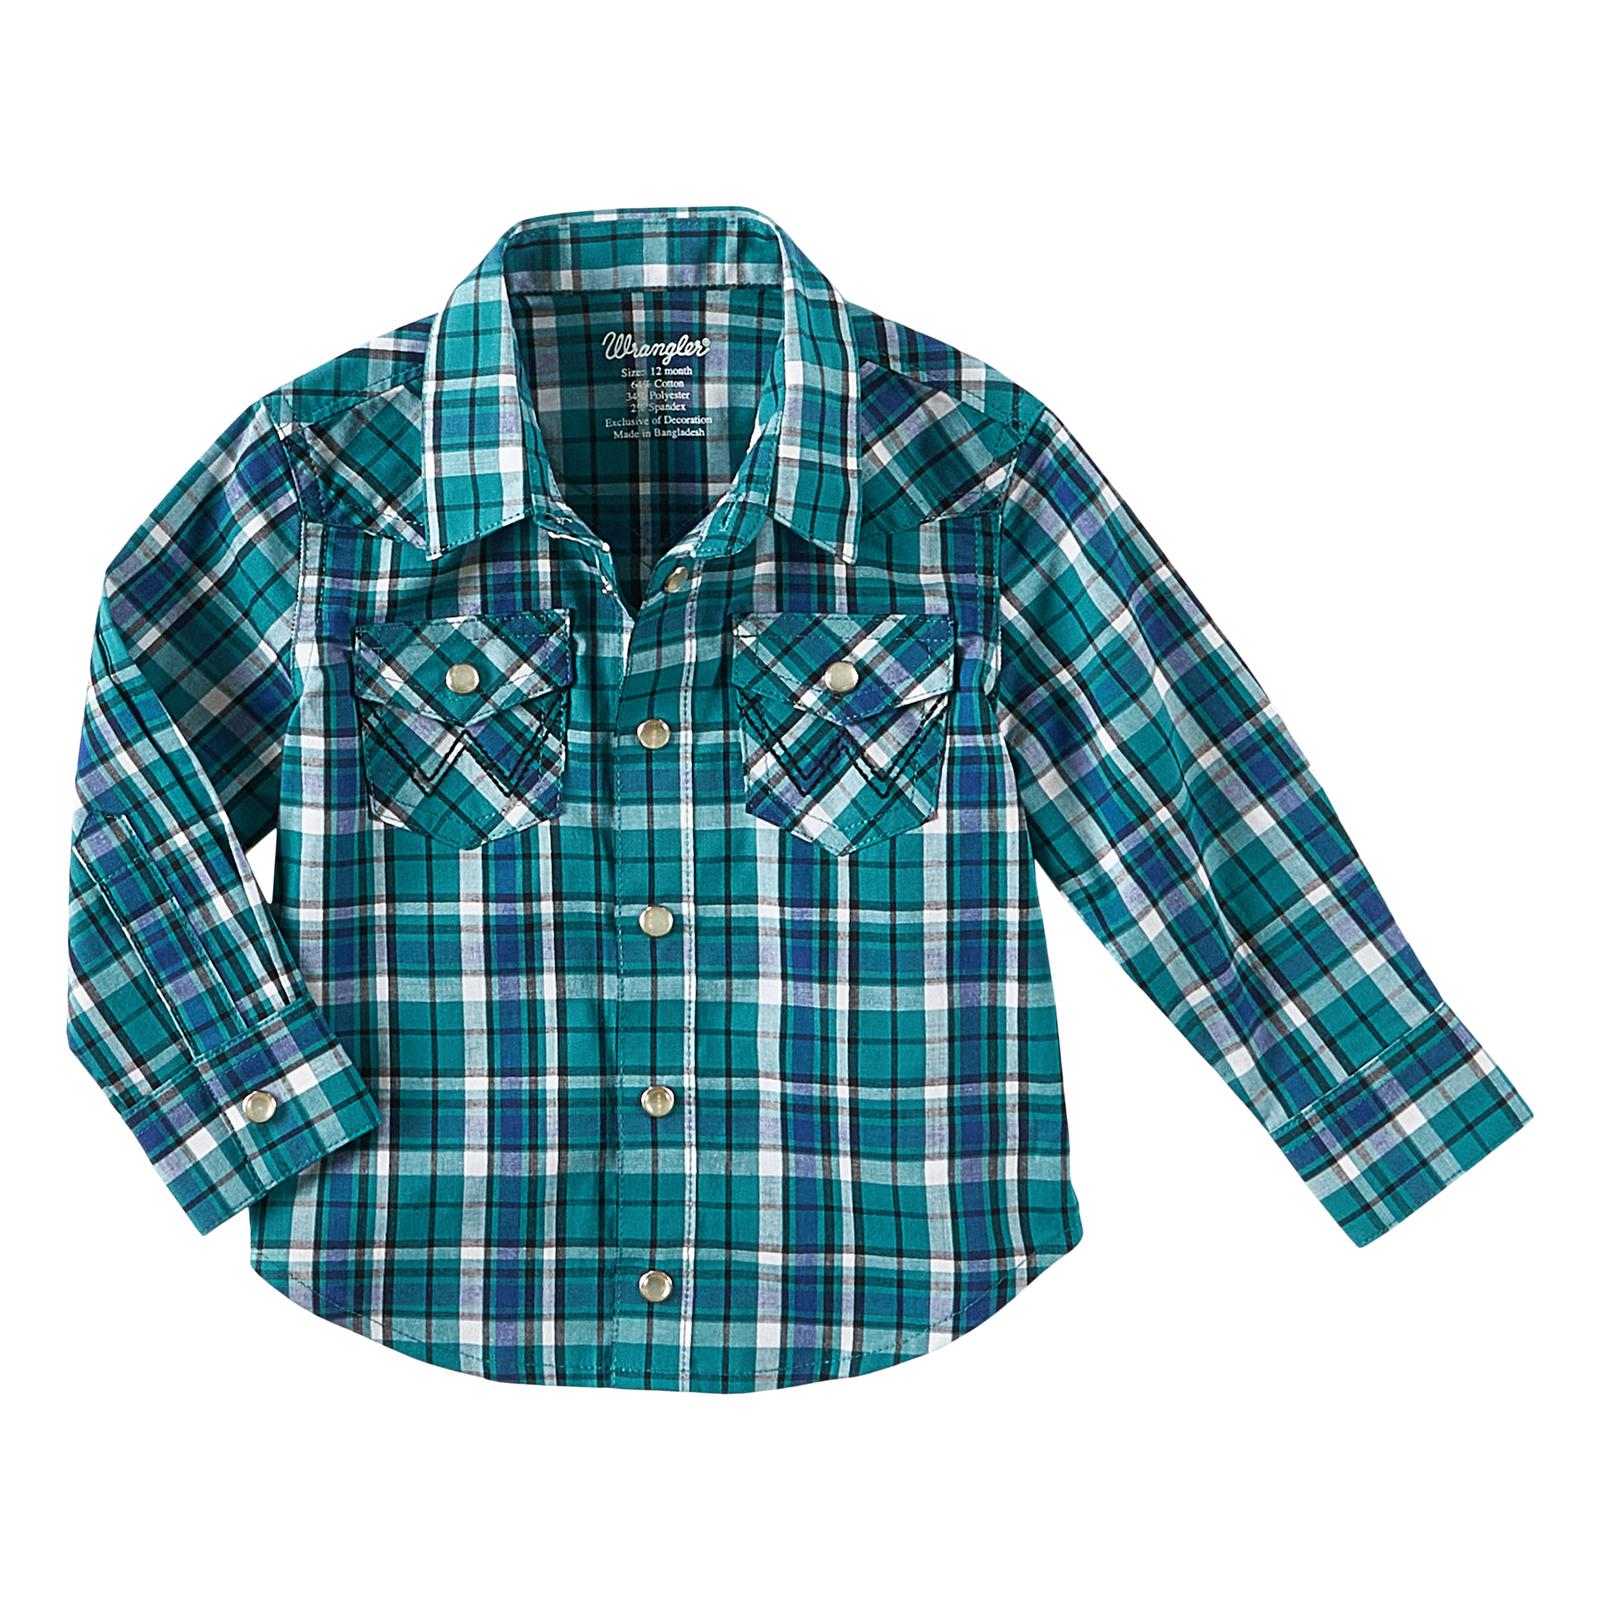 Wrangler Infant/Toddler Boy's Long Sleeve Shirt STYLE 112322460